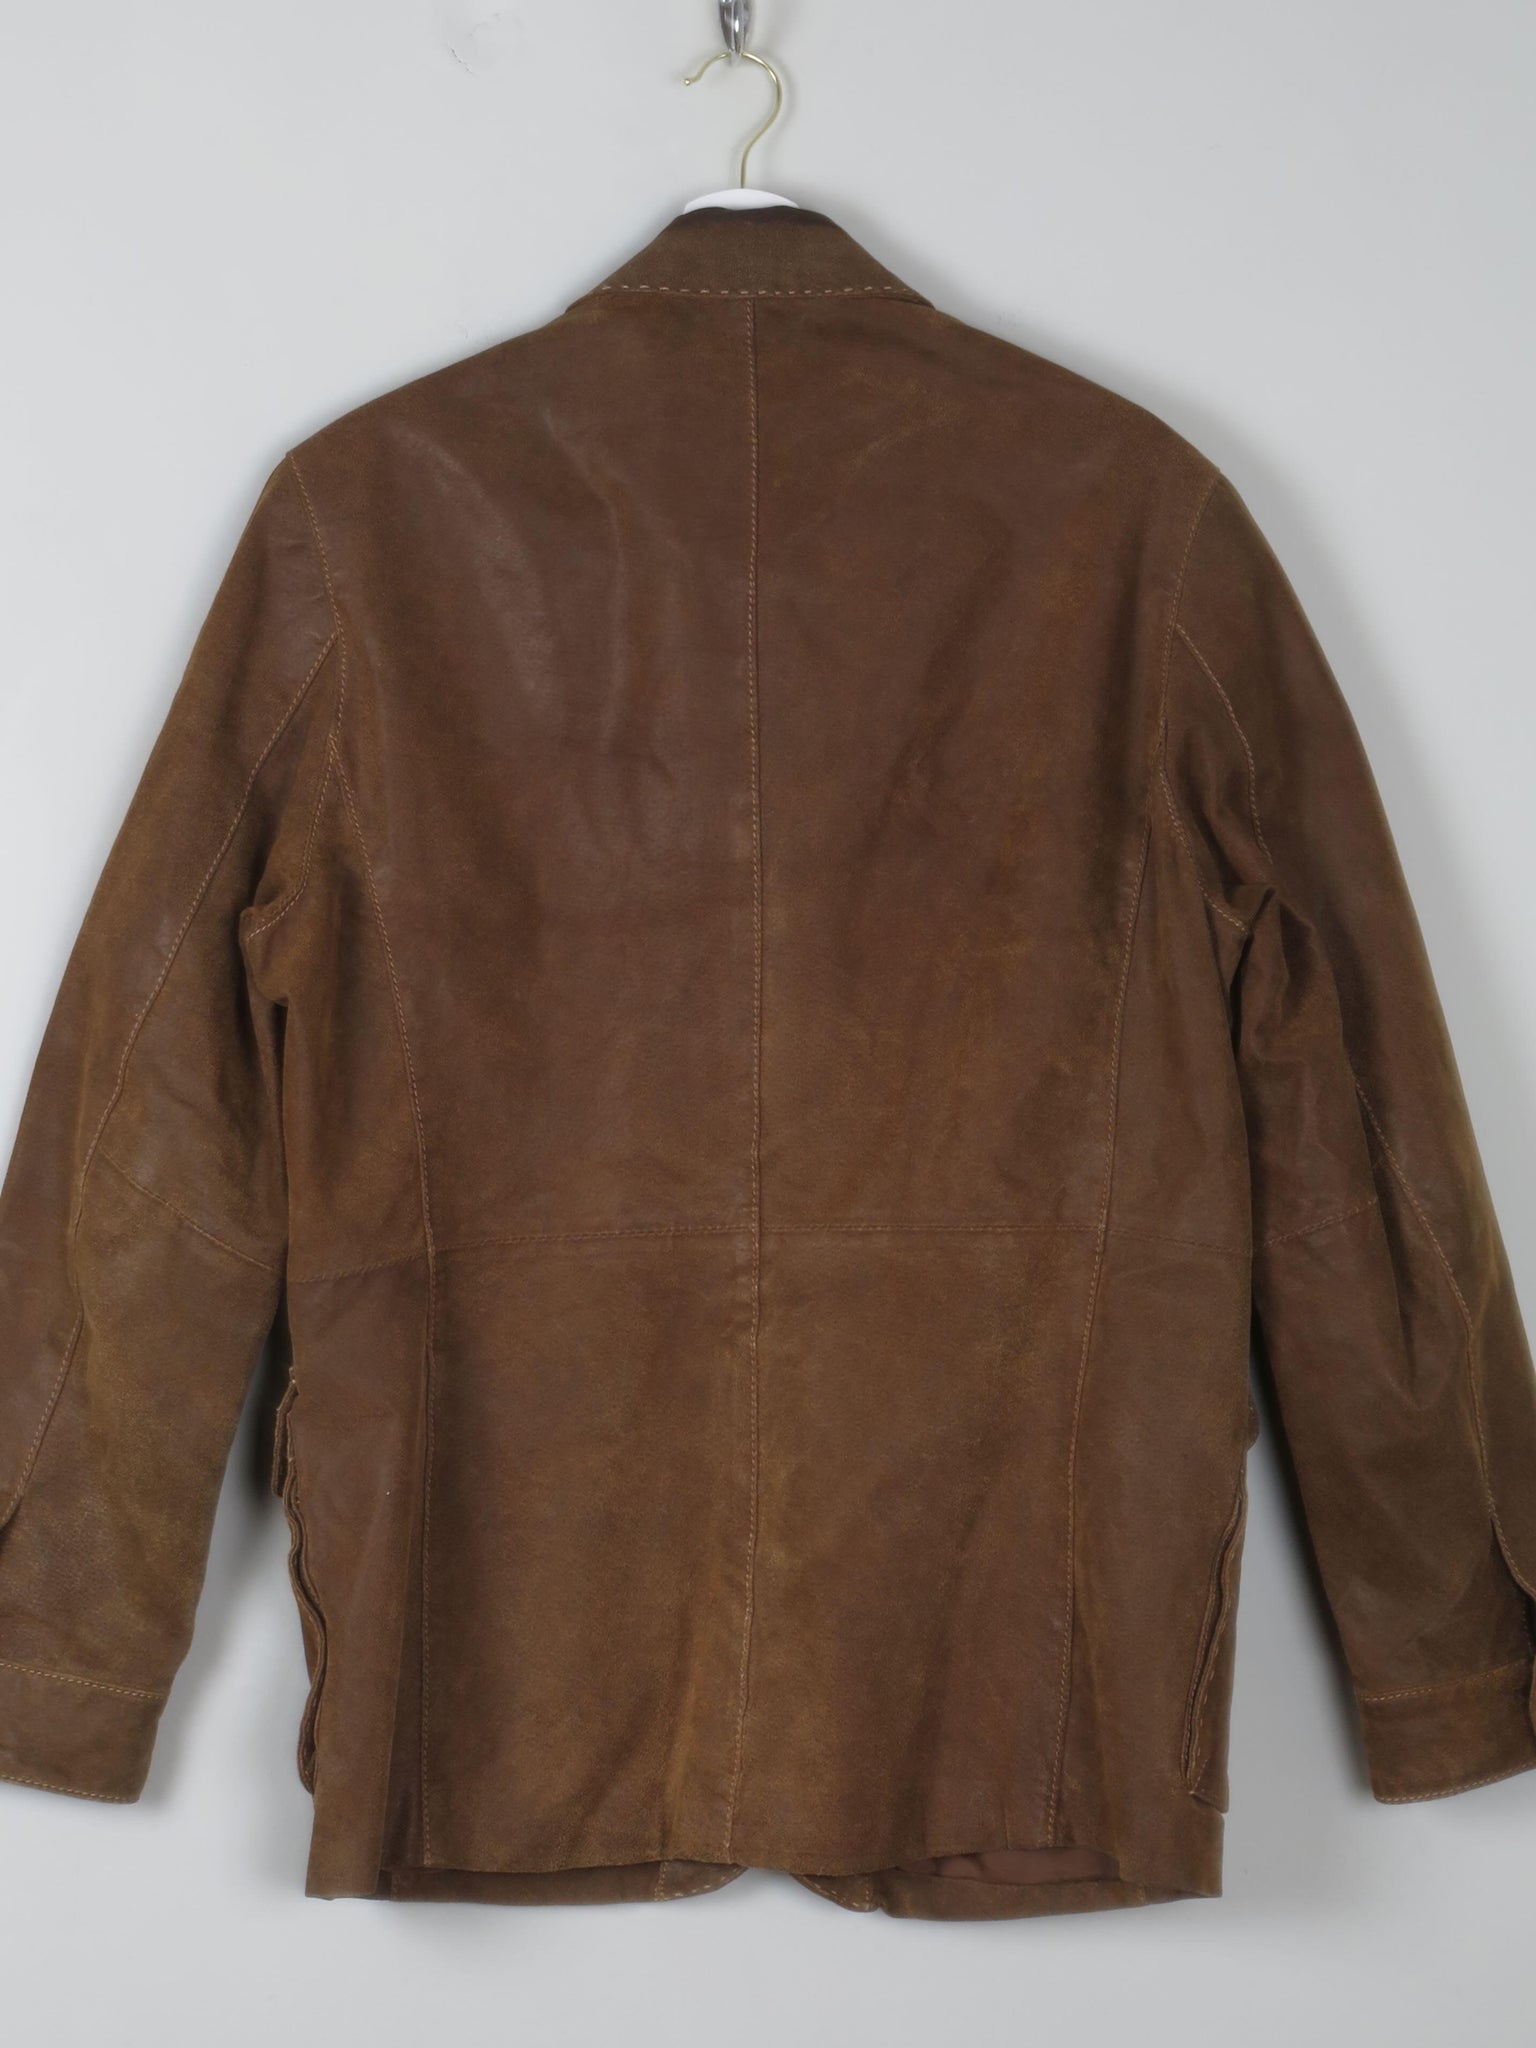 Men's Brown Vintage Suede Jacket 38/40 - The Harlequin